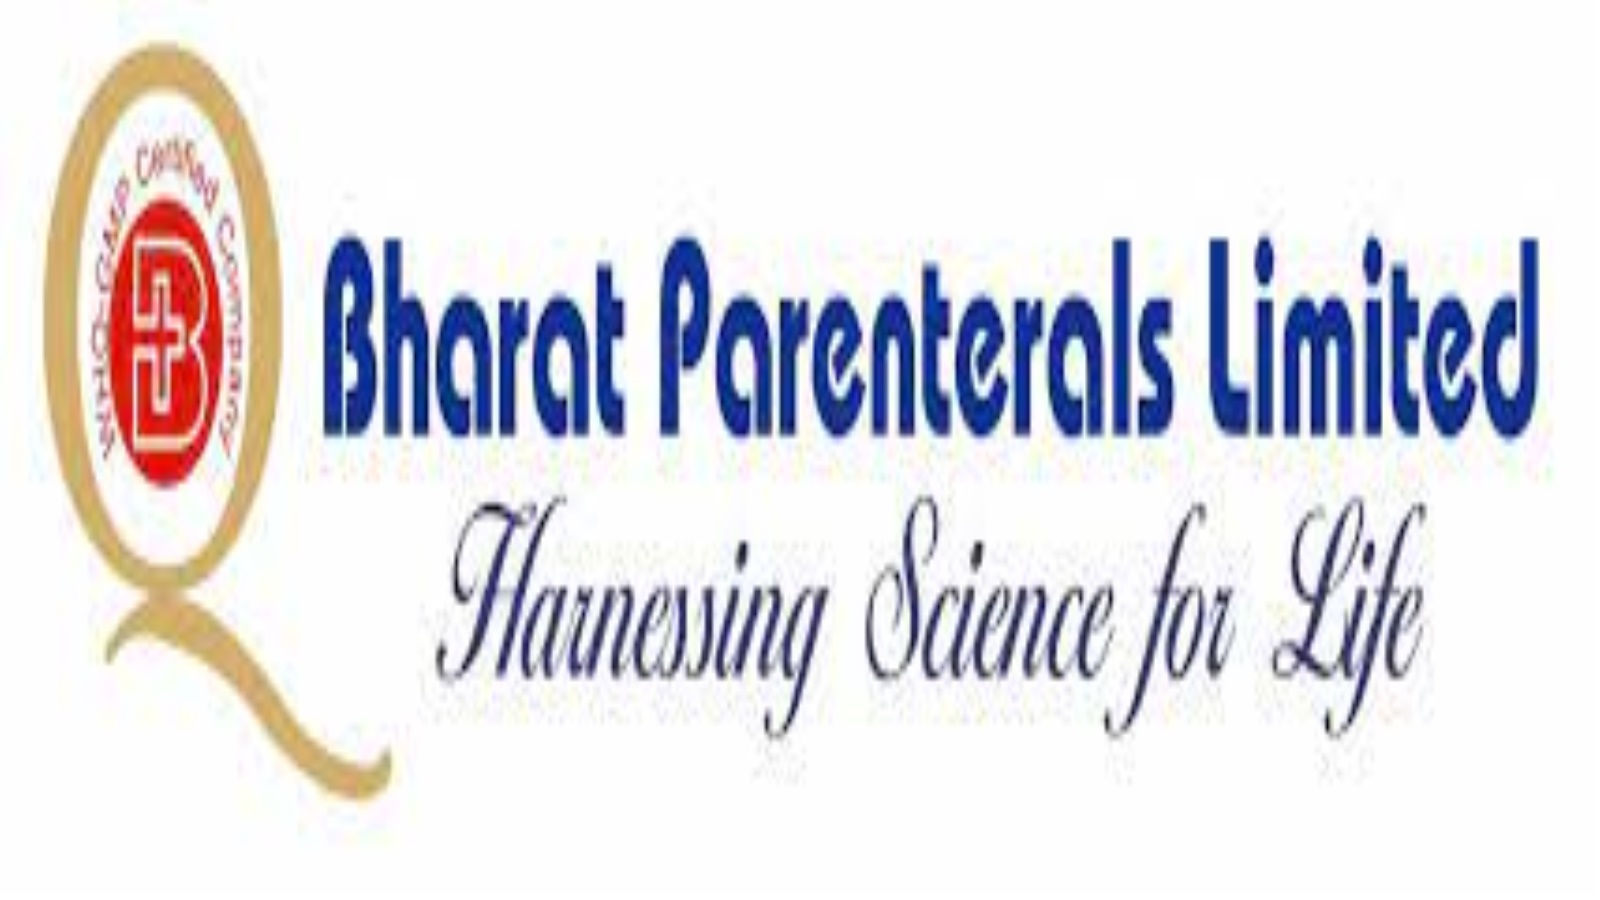 Bharat Parenterals Ltd